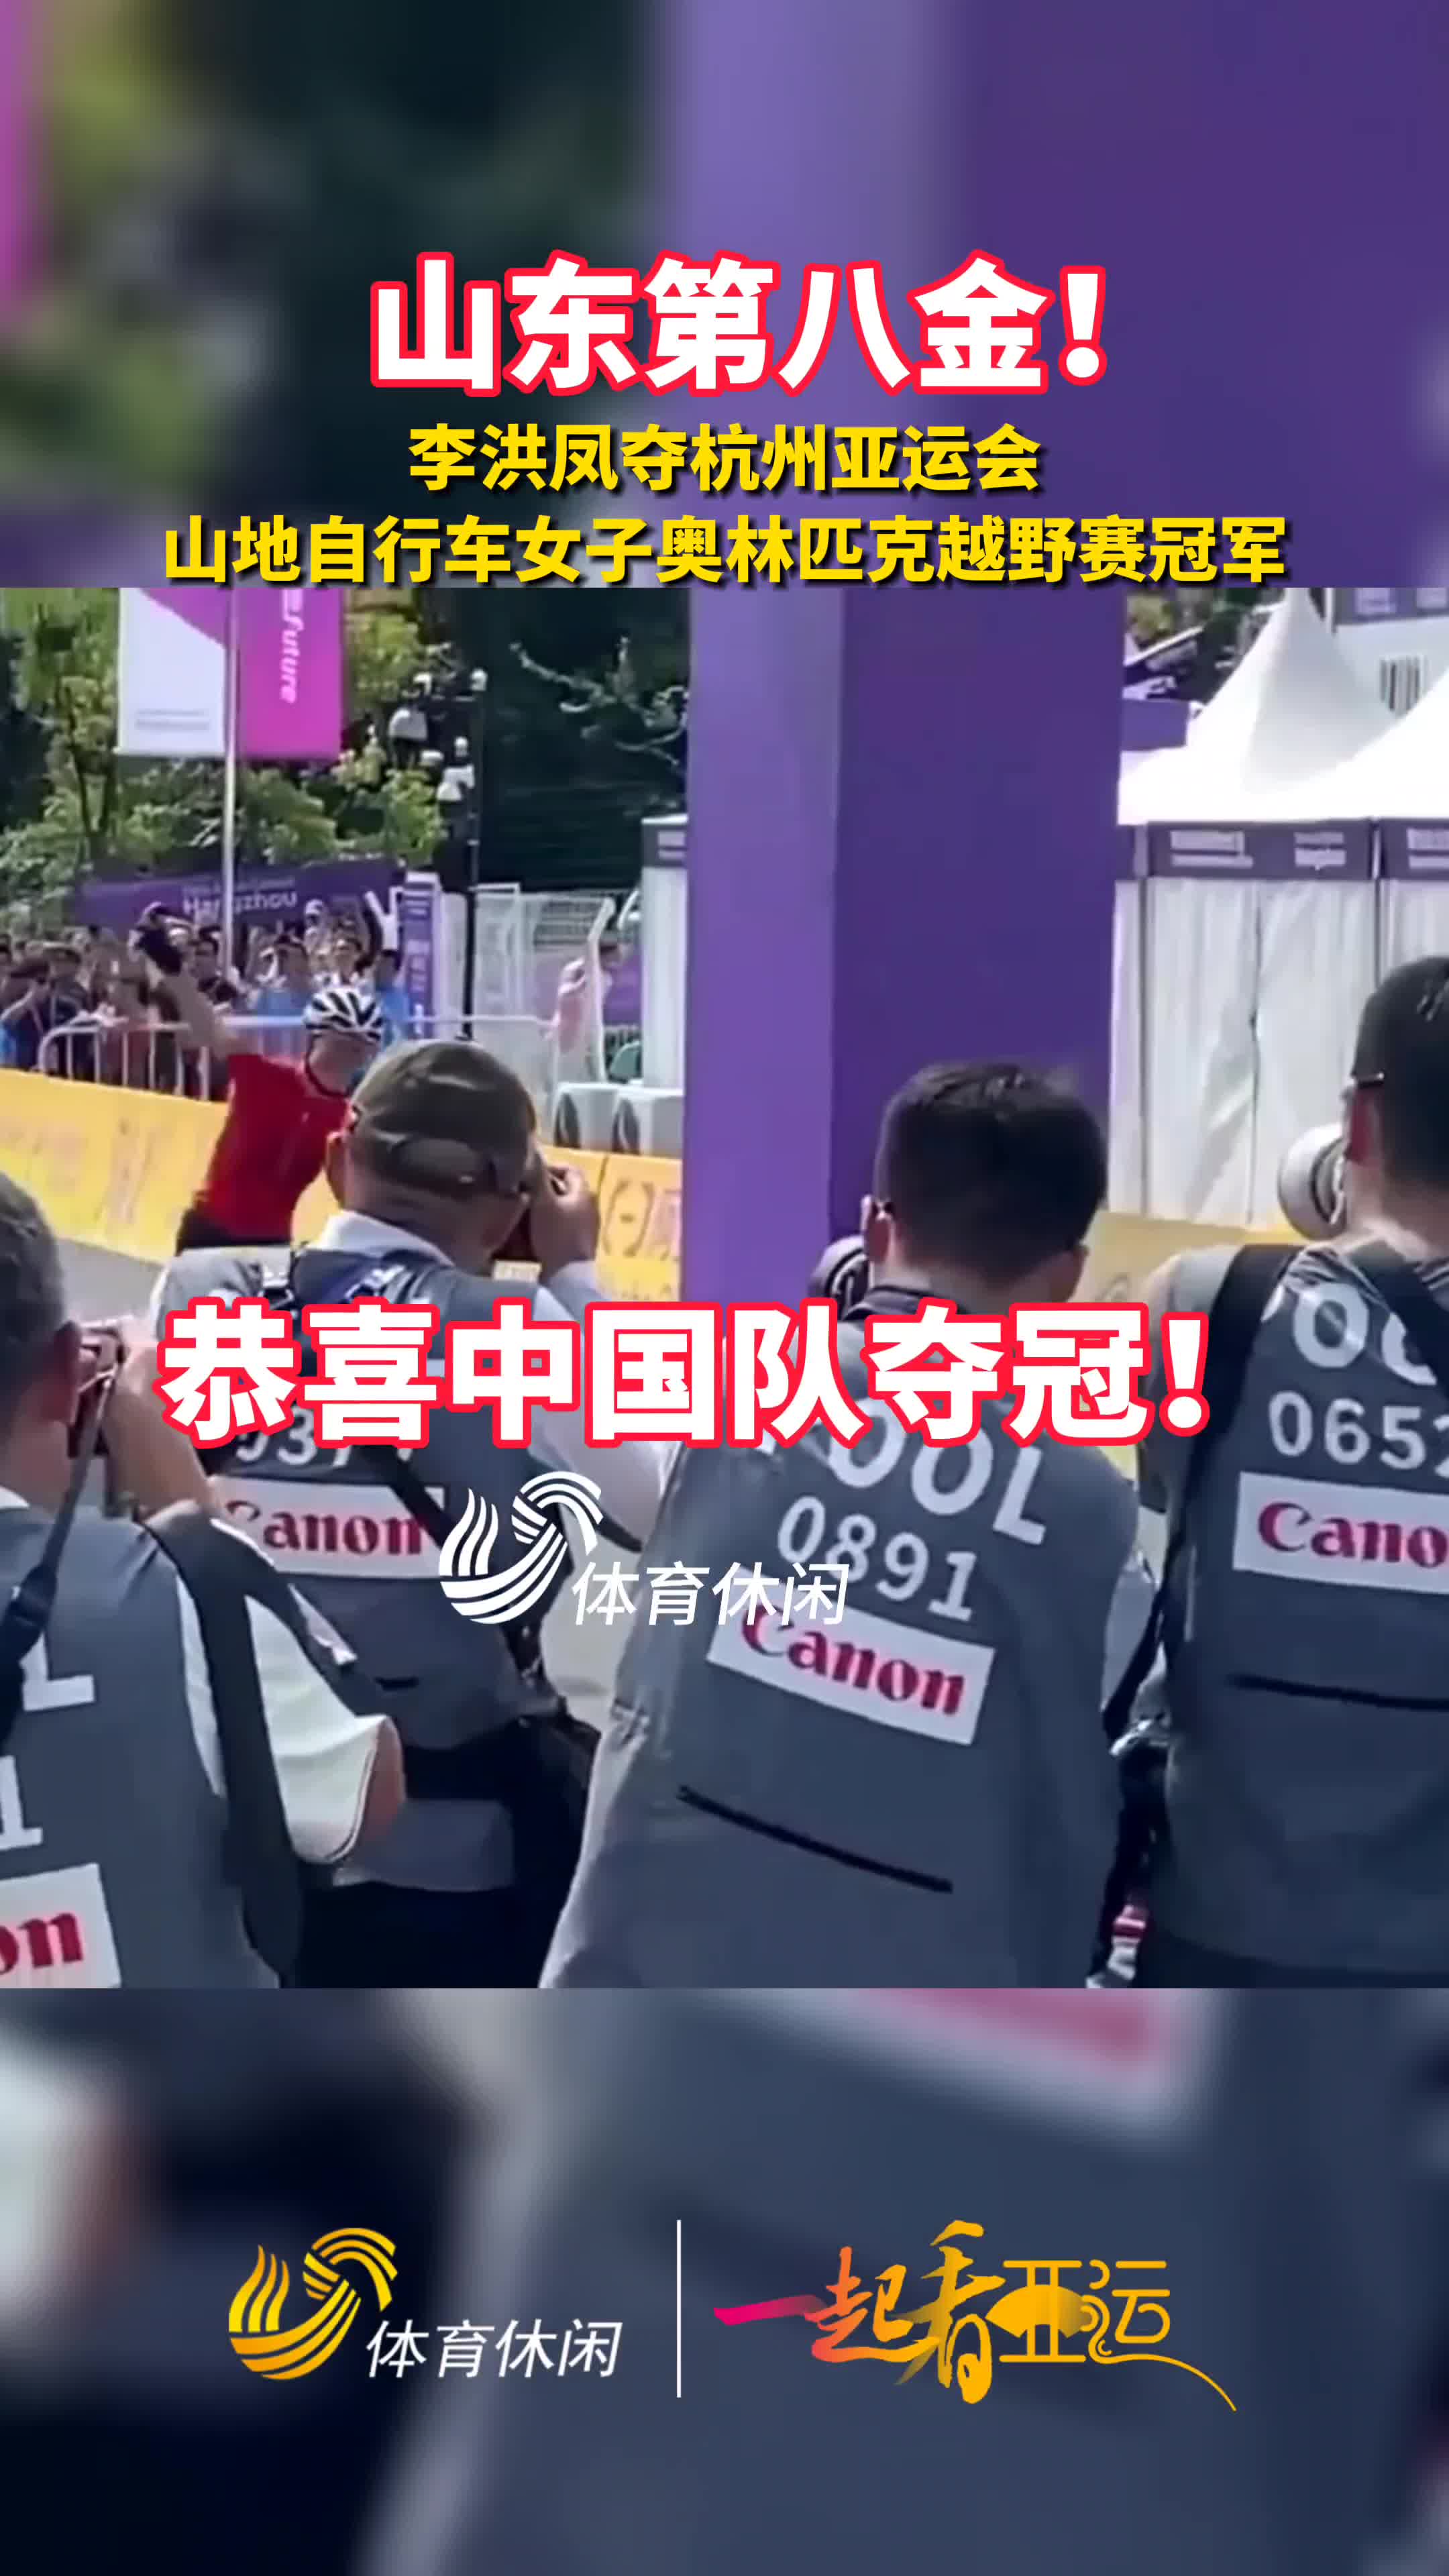 一起看亚运丨李洪凤夺山地自行车女子奥林匹克越野赛冠军